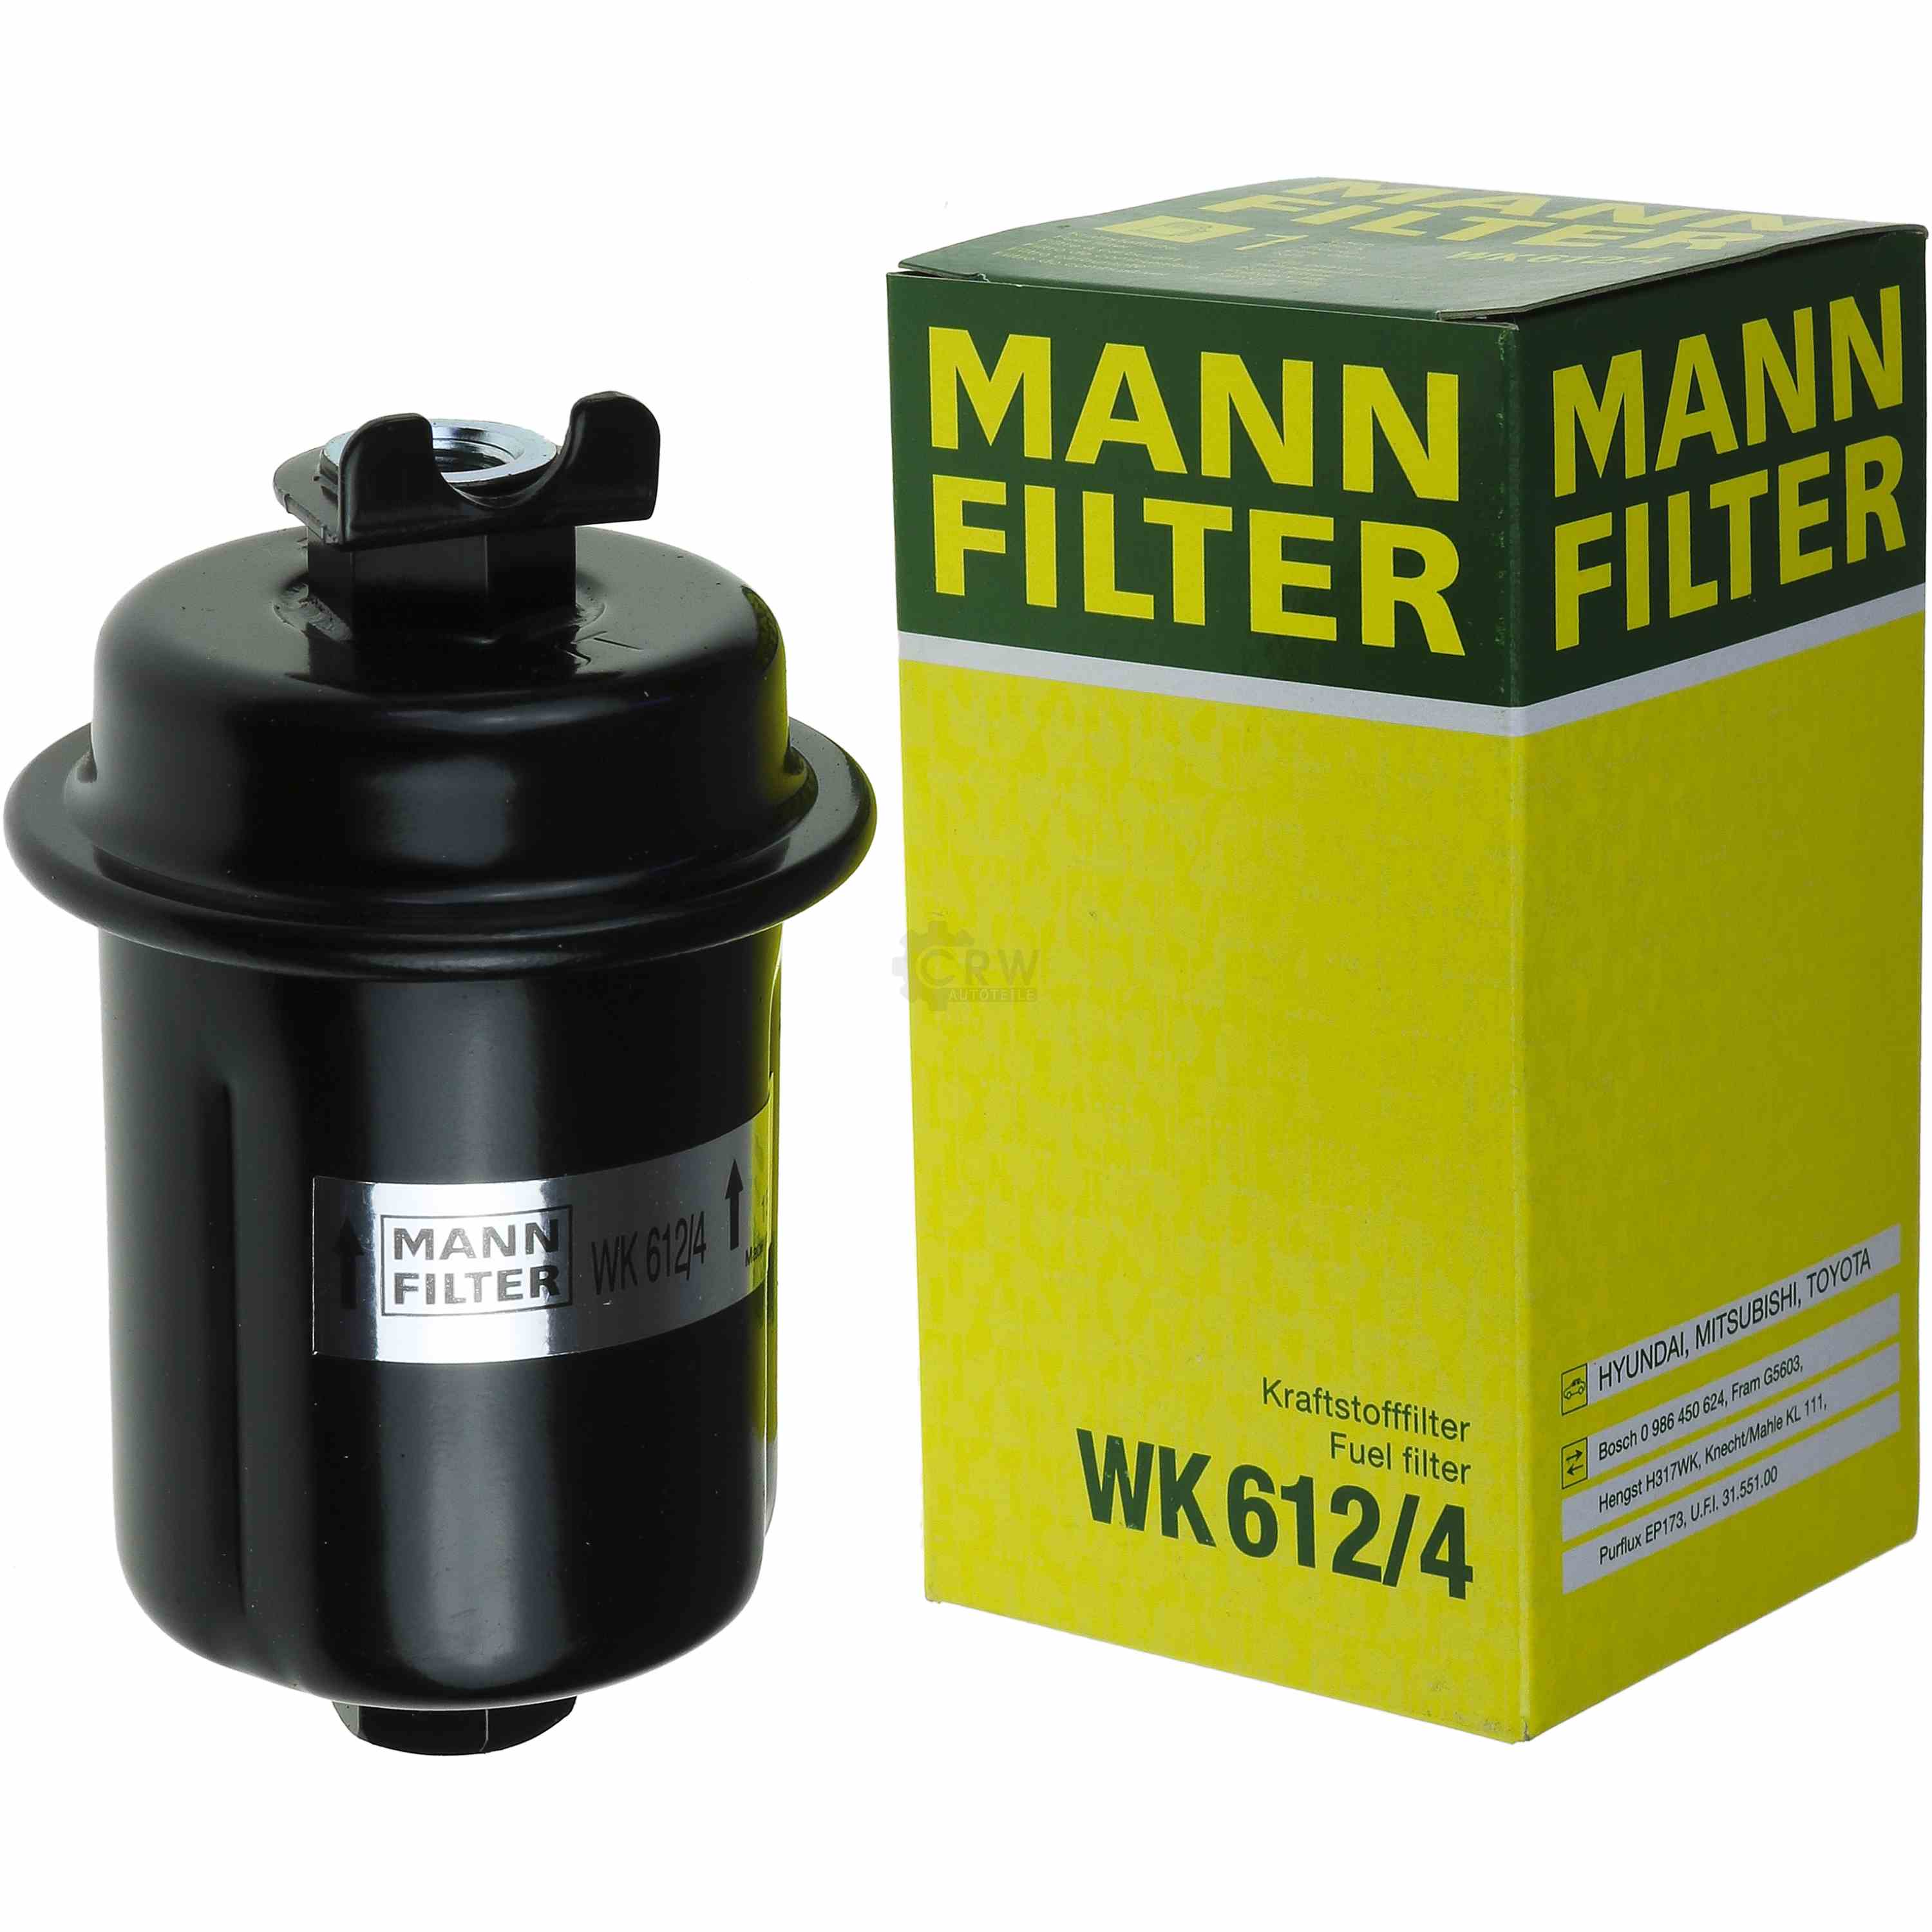 MANN-FILTER Kraftstofffilter WK 612/4 Fuel Filter